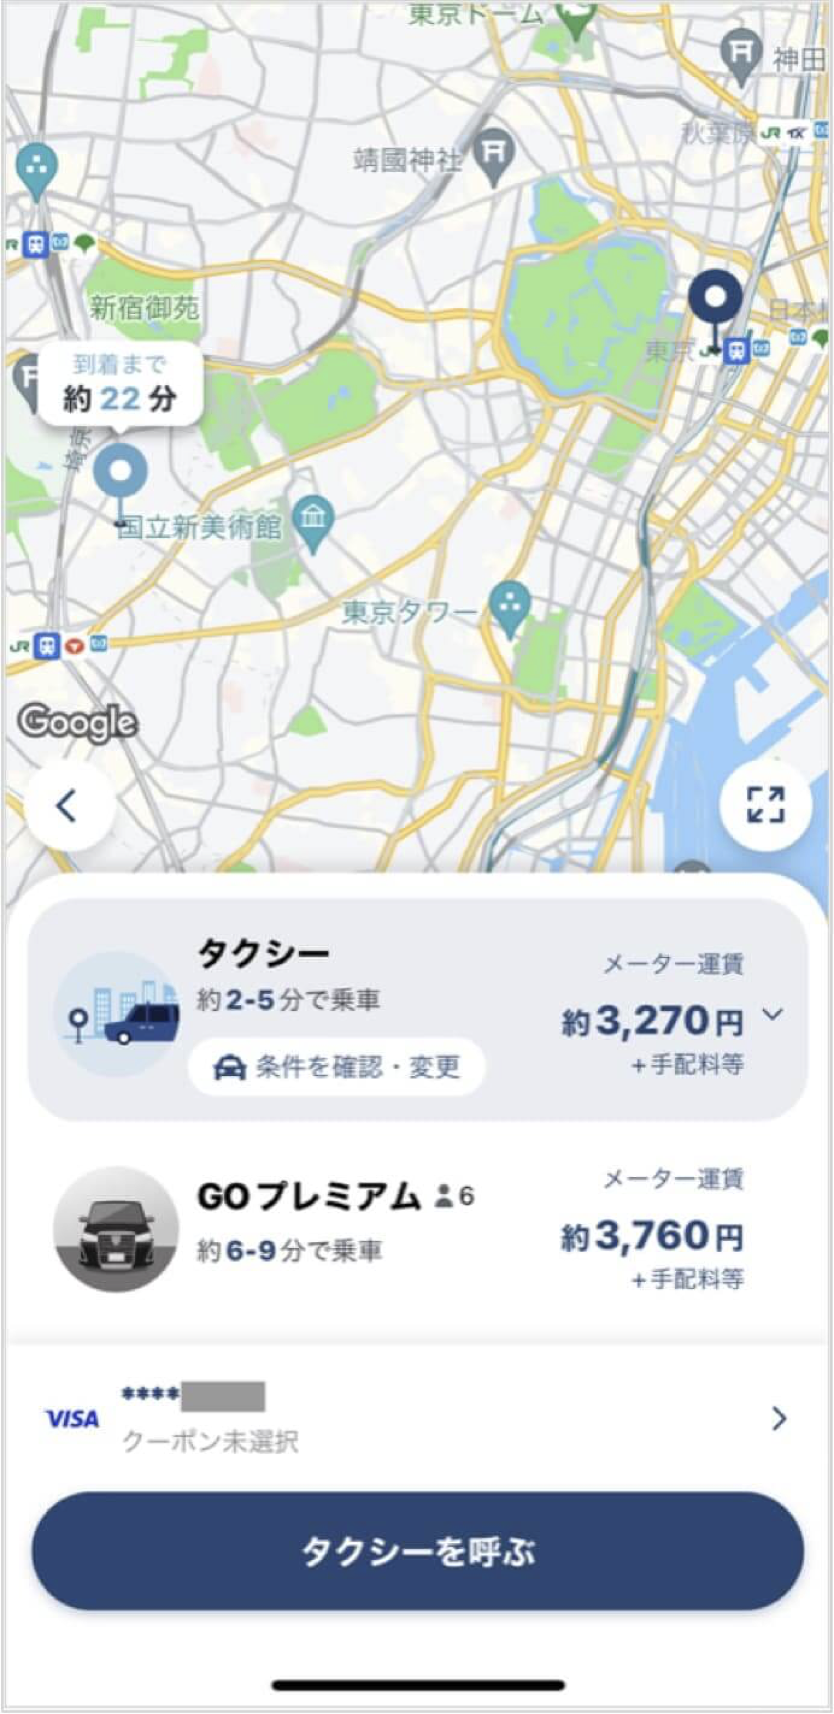 東京駅から表参道までのタクシー料金・所要時間まとめ